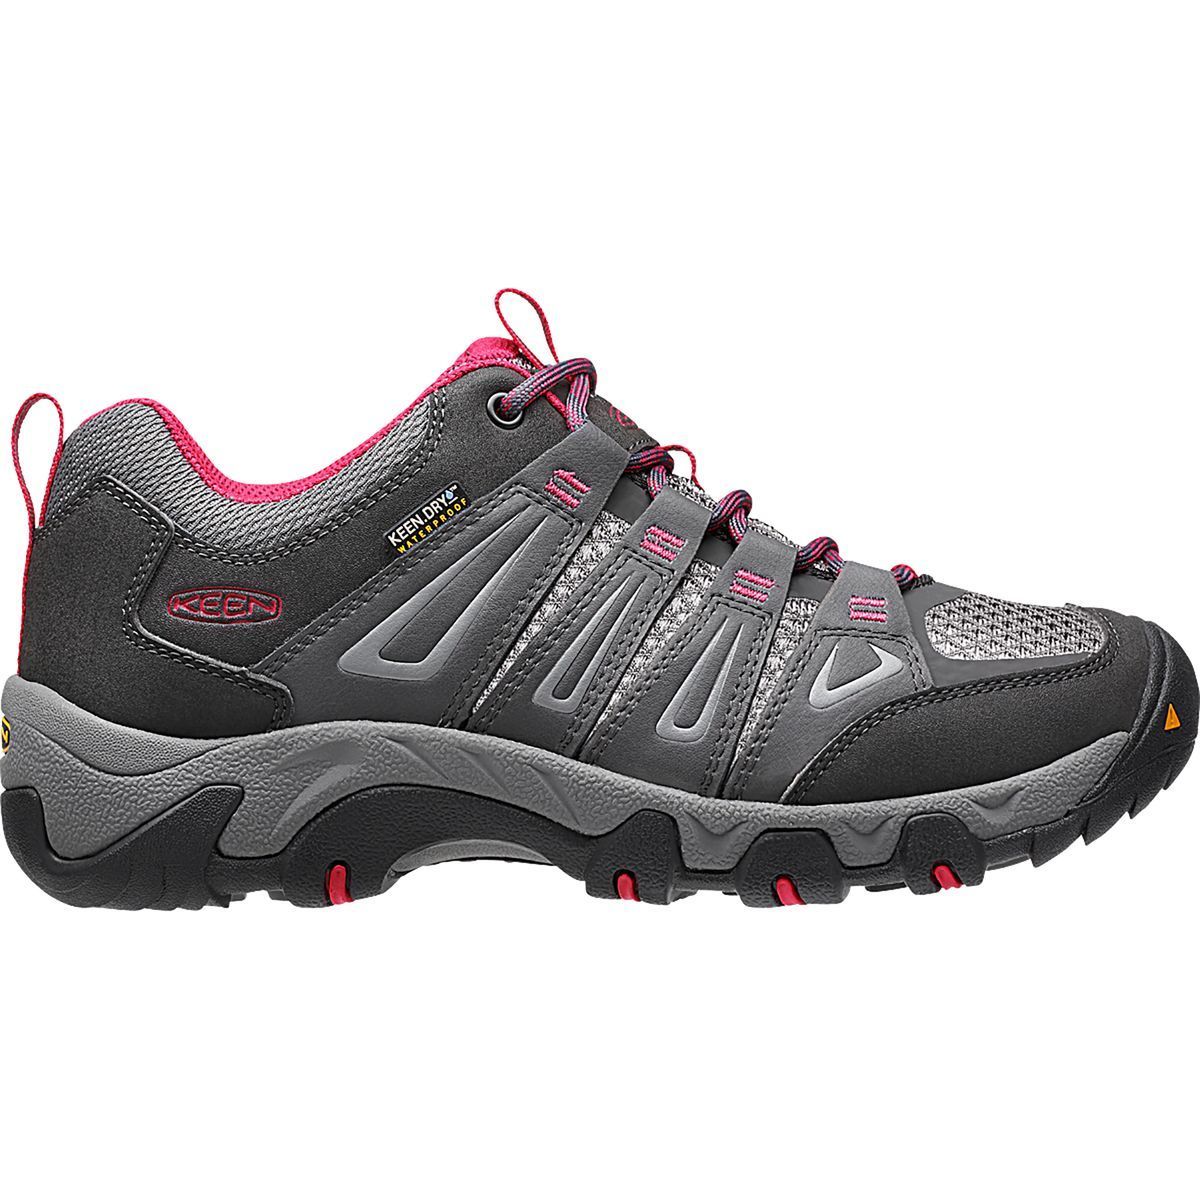 KEEN Oakridge Waterproof Hiking Shoe - Women's - Footwear